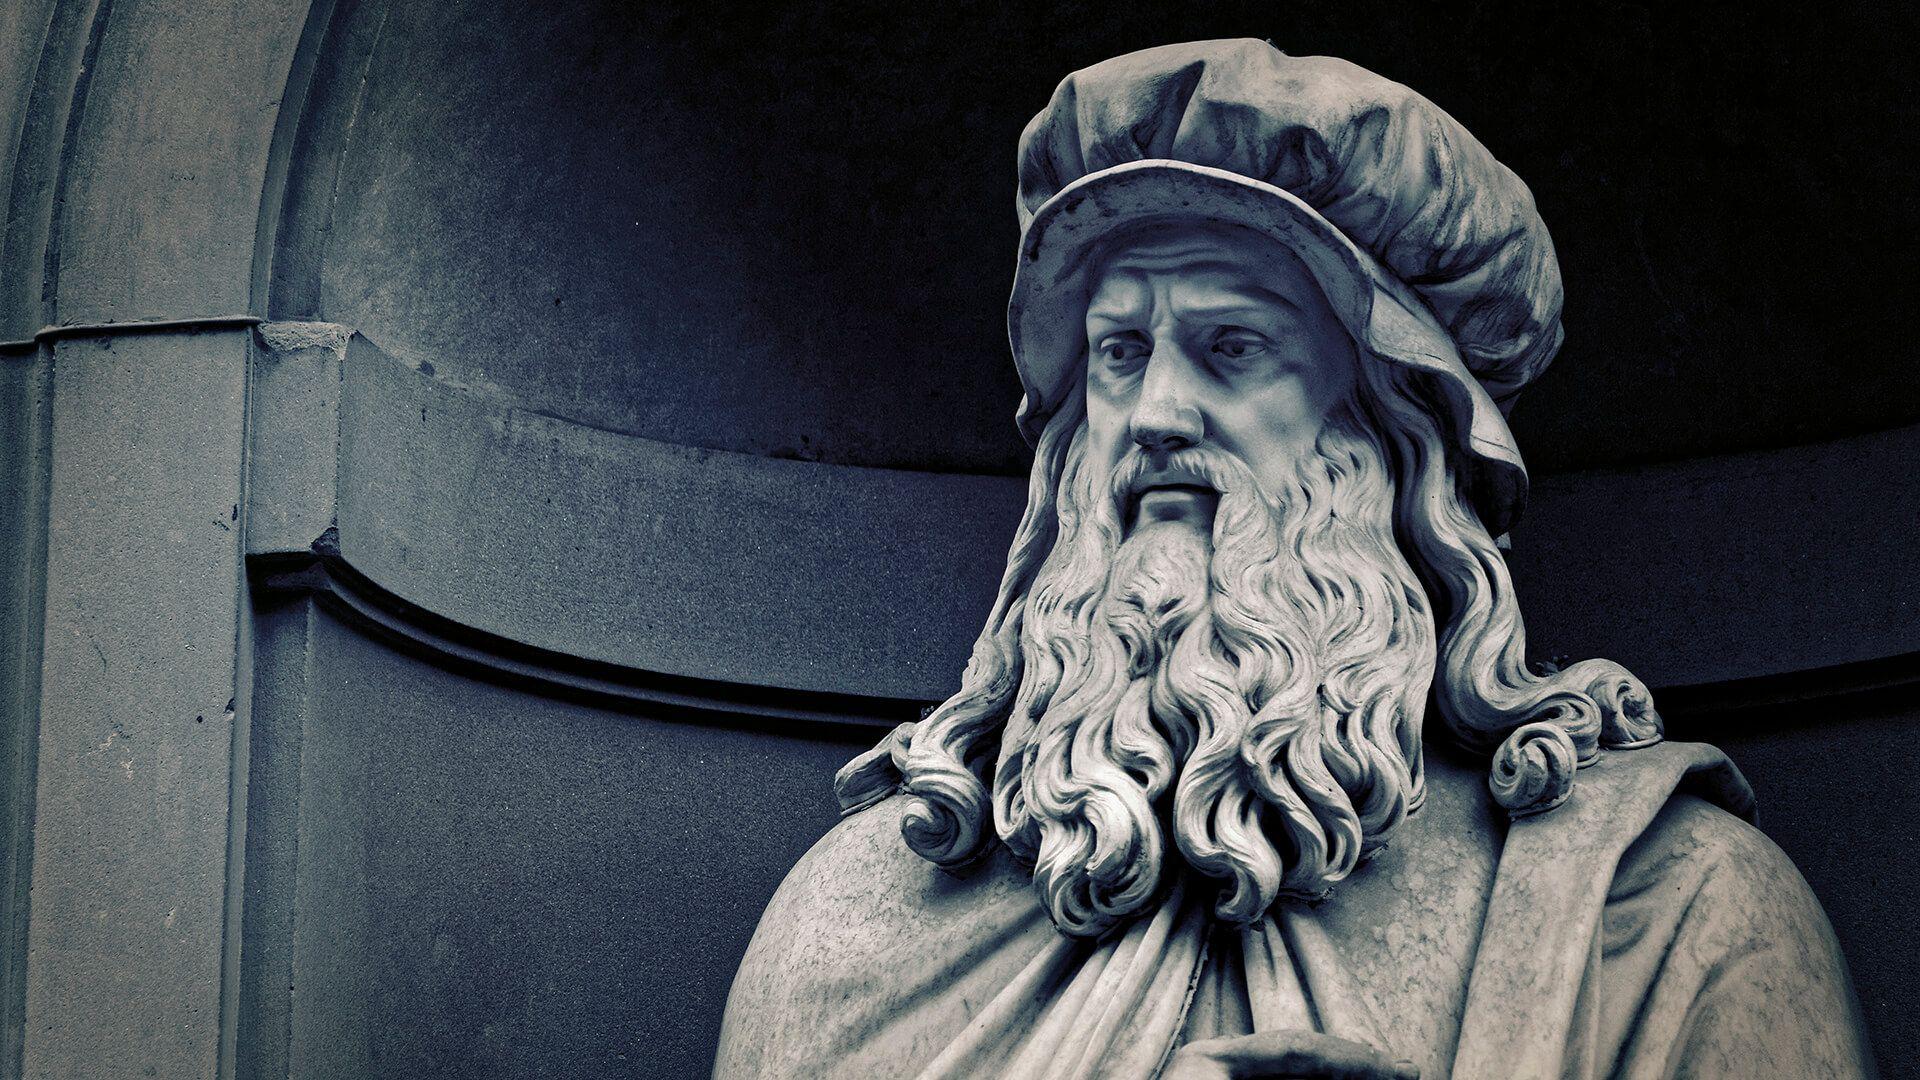 مجسمه لئوناردو داوینچی هنرمند و نقاش ایتالیایی شناخته شده تاریخ